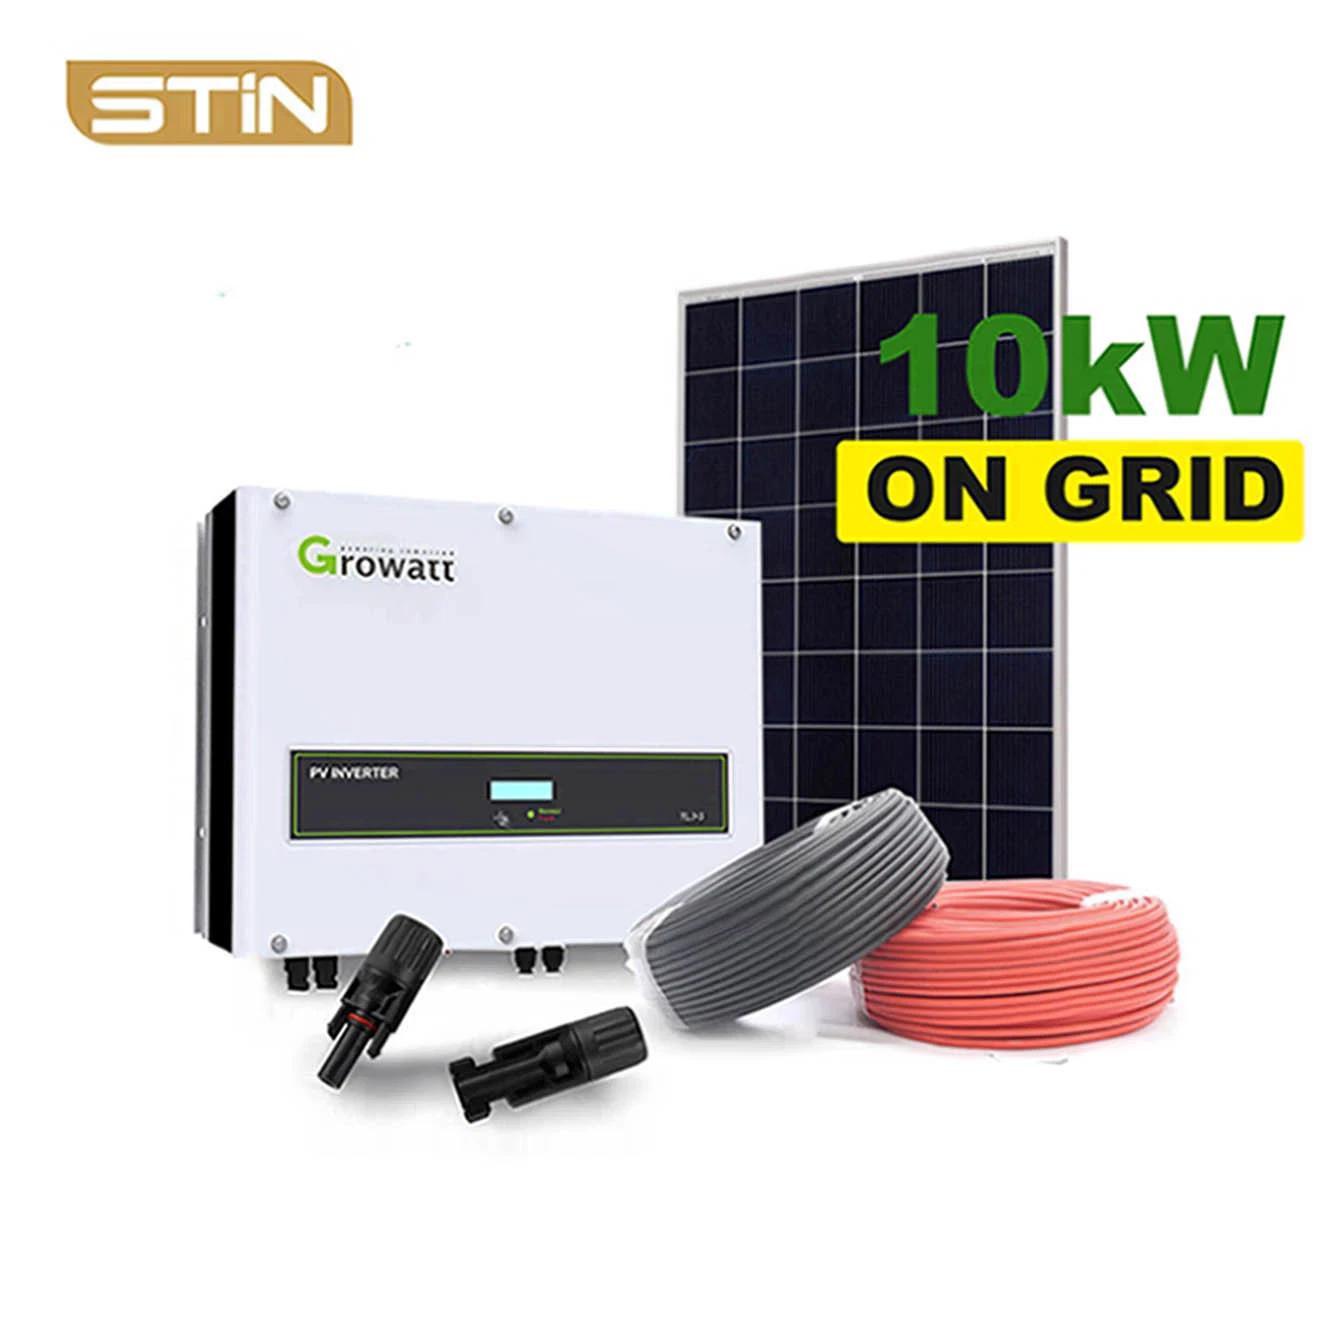 Neue kommerzielle Stin oder OEM / ODM Palette + Holzkasten System Solar Leistung